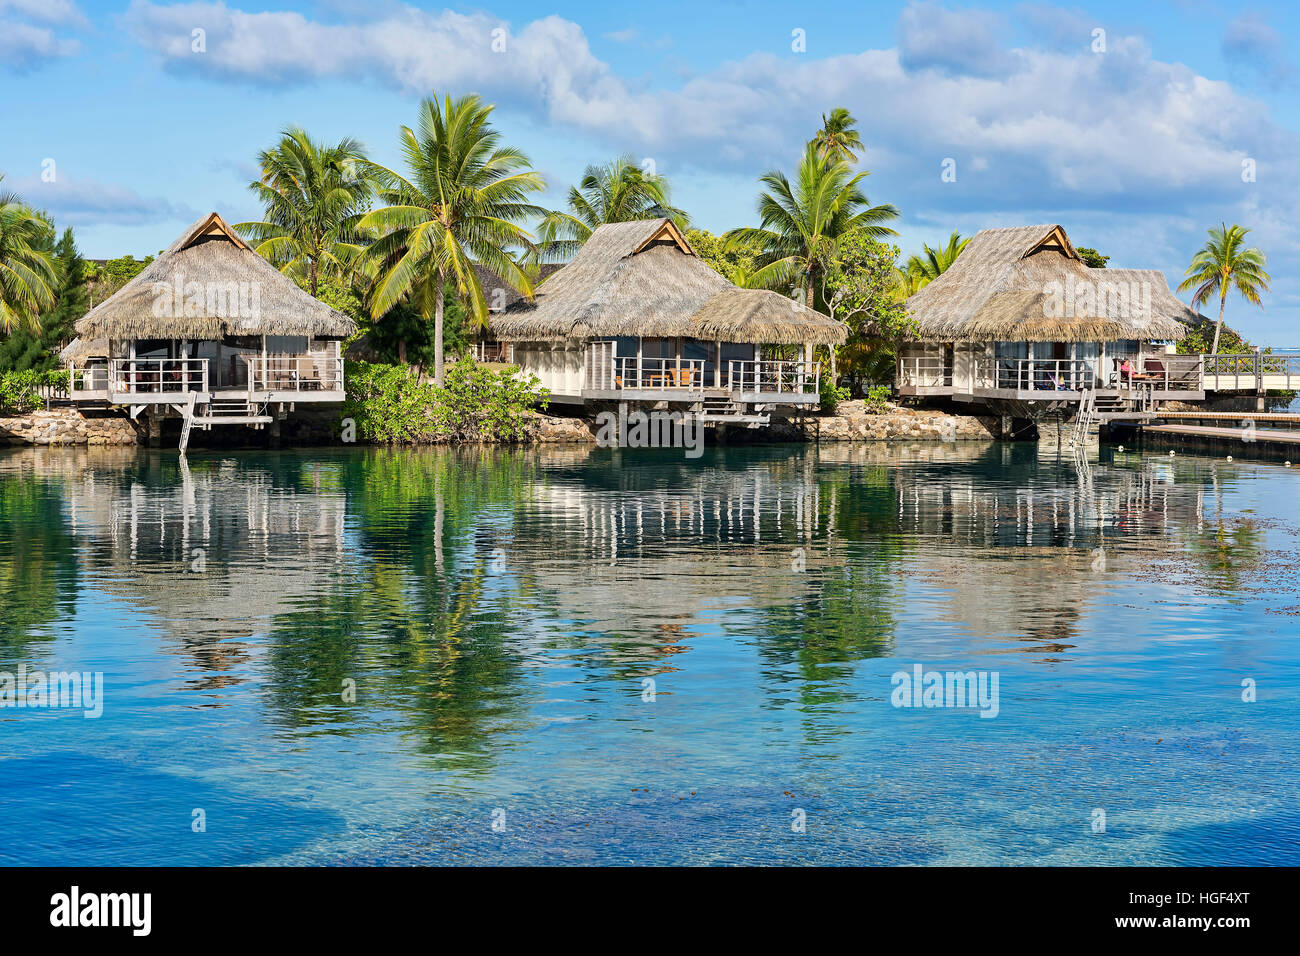 Maison de vacances resort avec bungalows, Moorea, Polynésie Française Banque D'Images